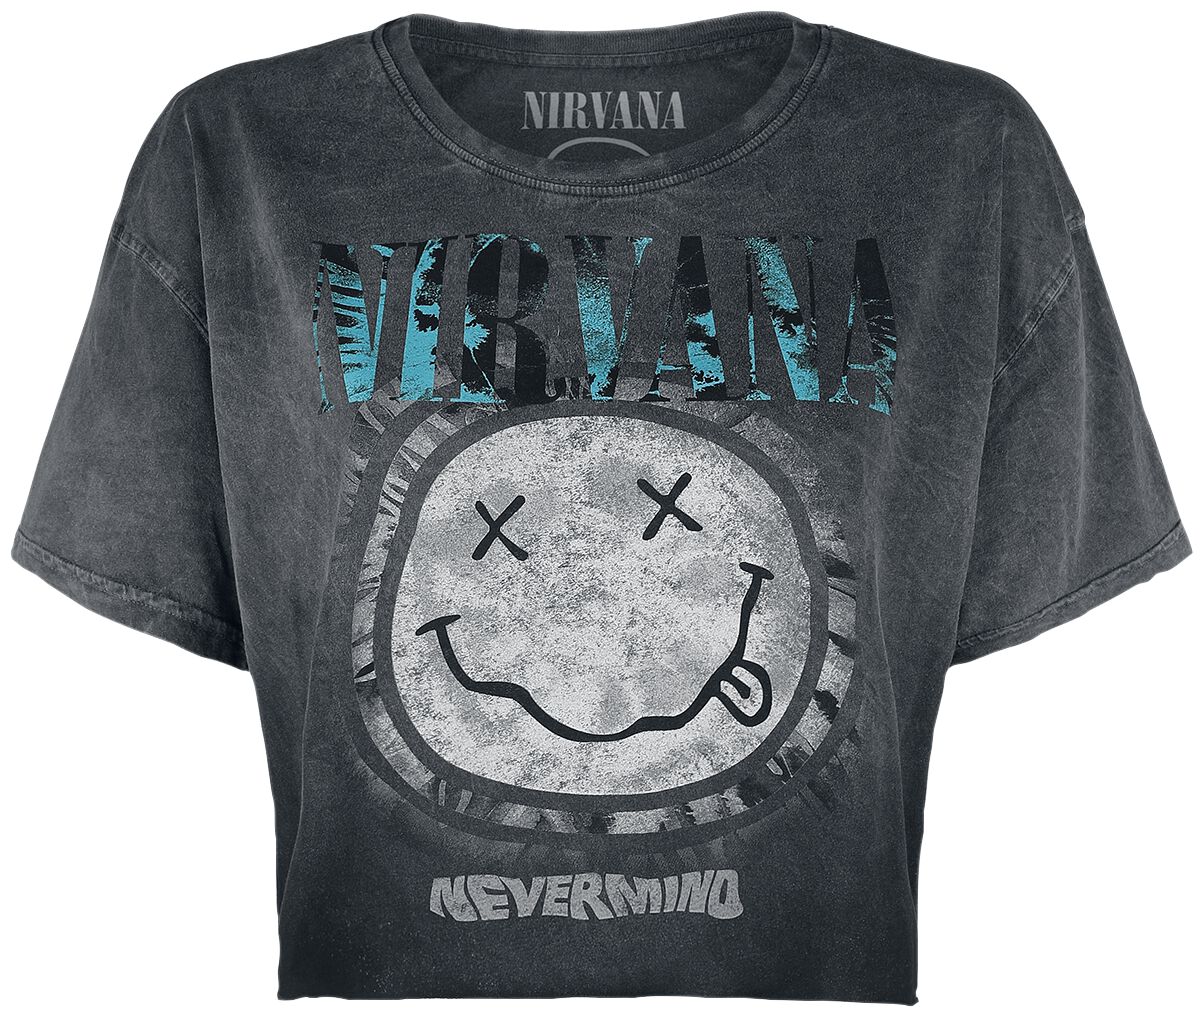 T-Shirt Manches courtes de Nirvana - Nevermind - S à XXL - pour Femme - gris